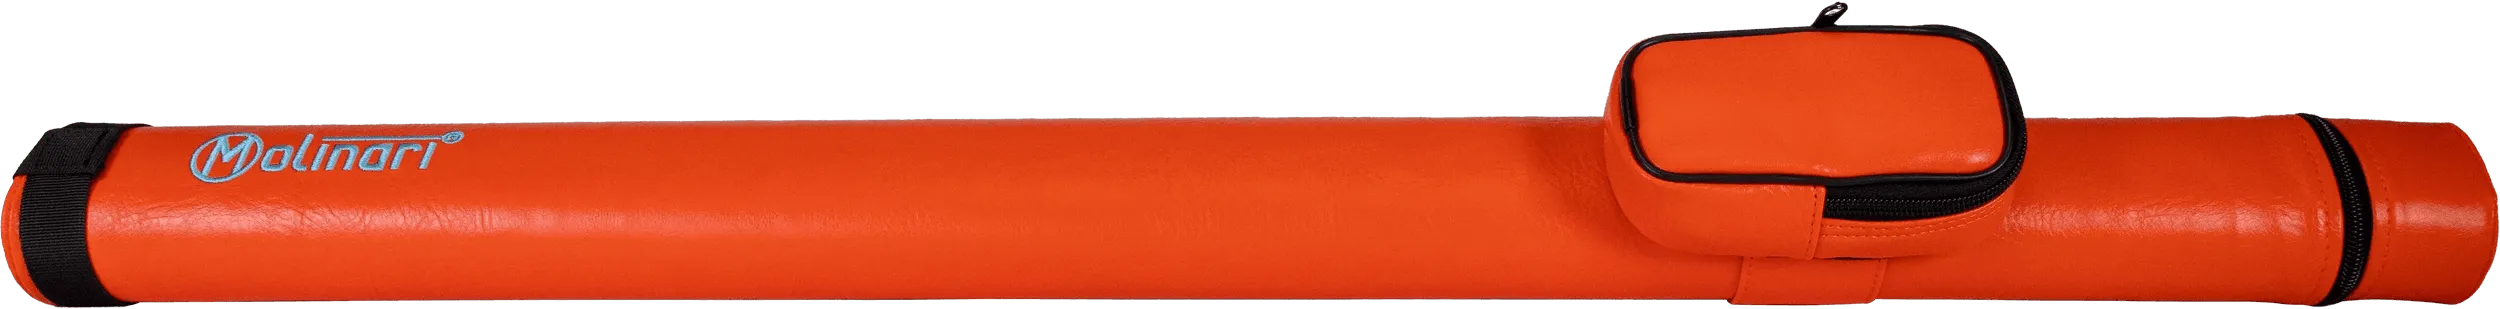 Molinari® retro cue tube in red orange color, front view